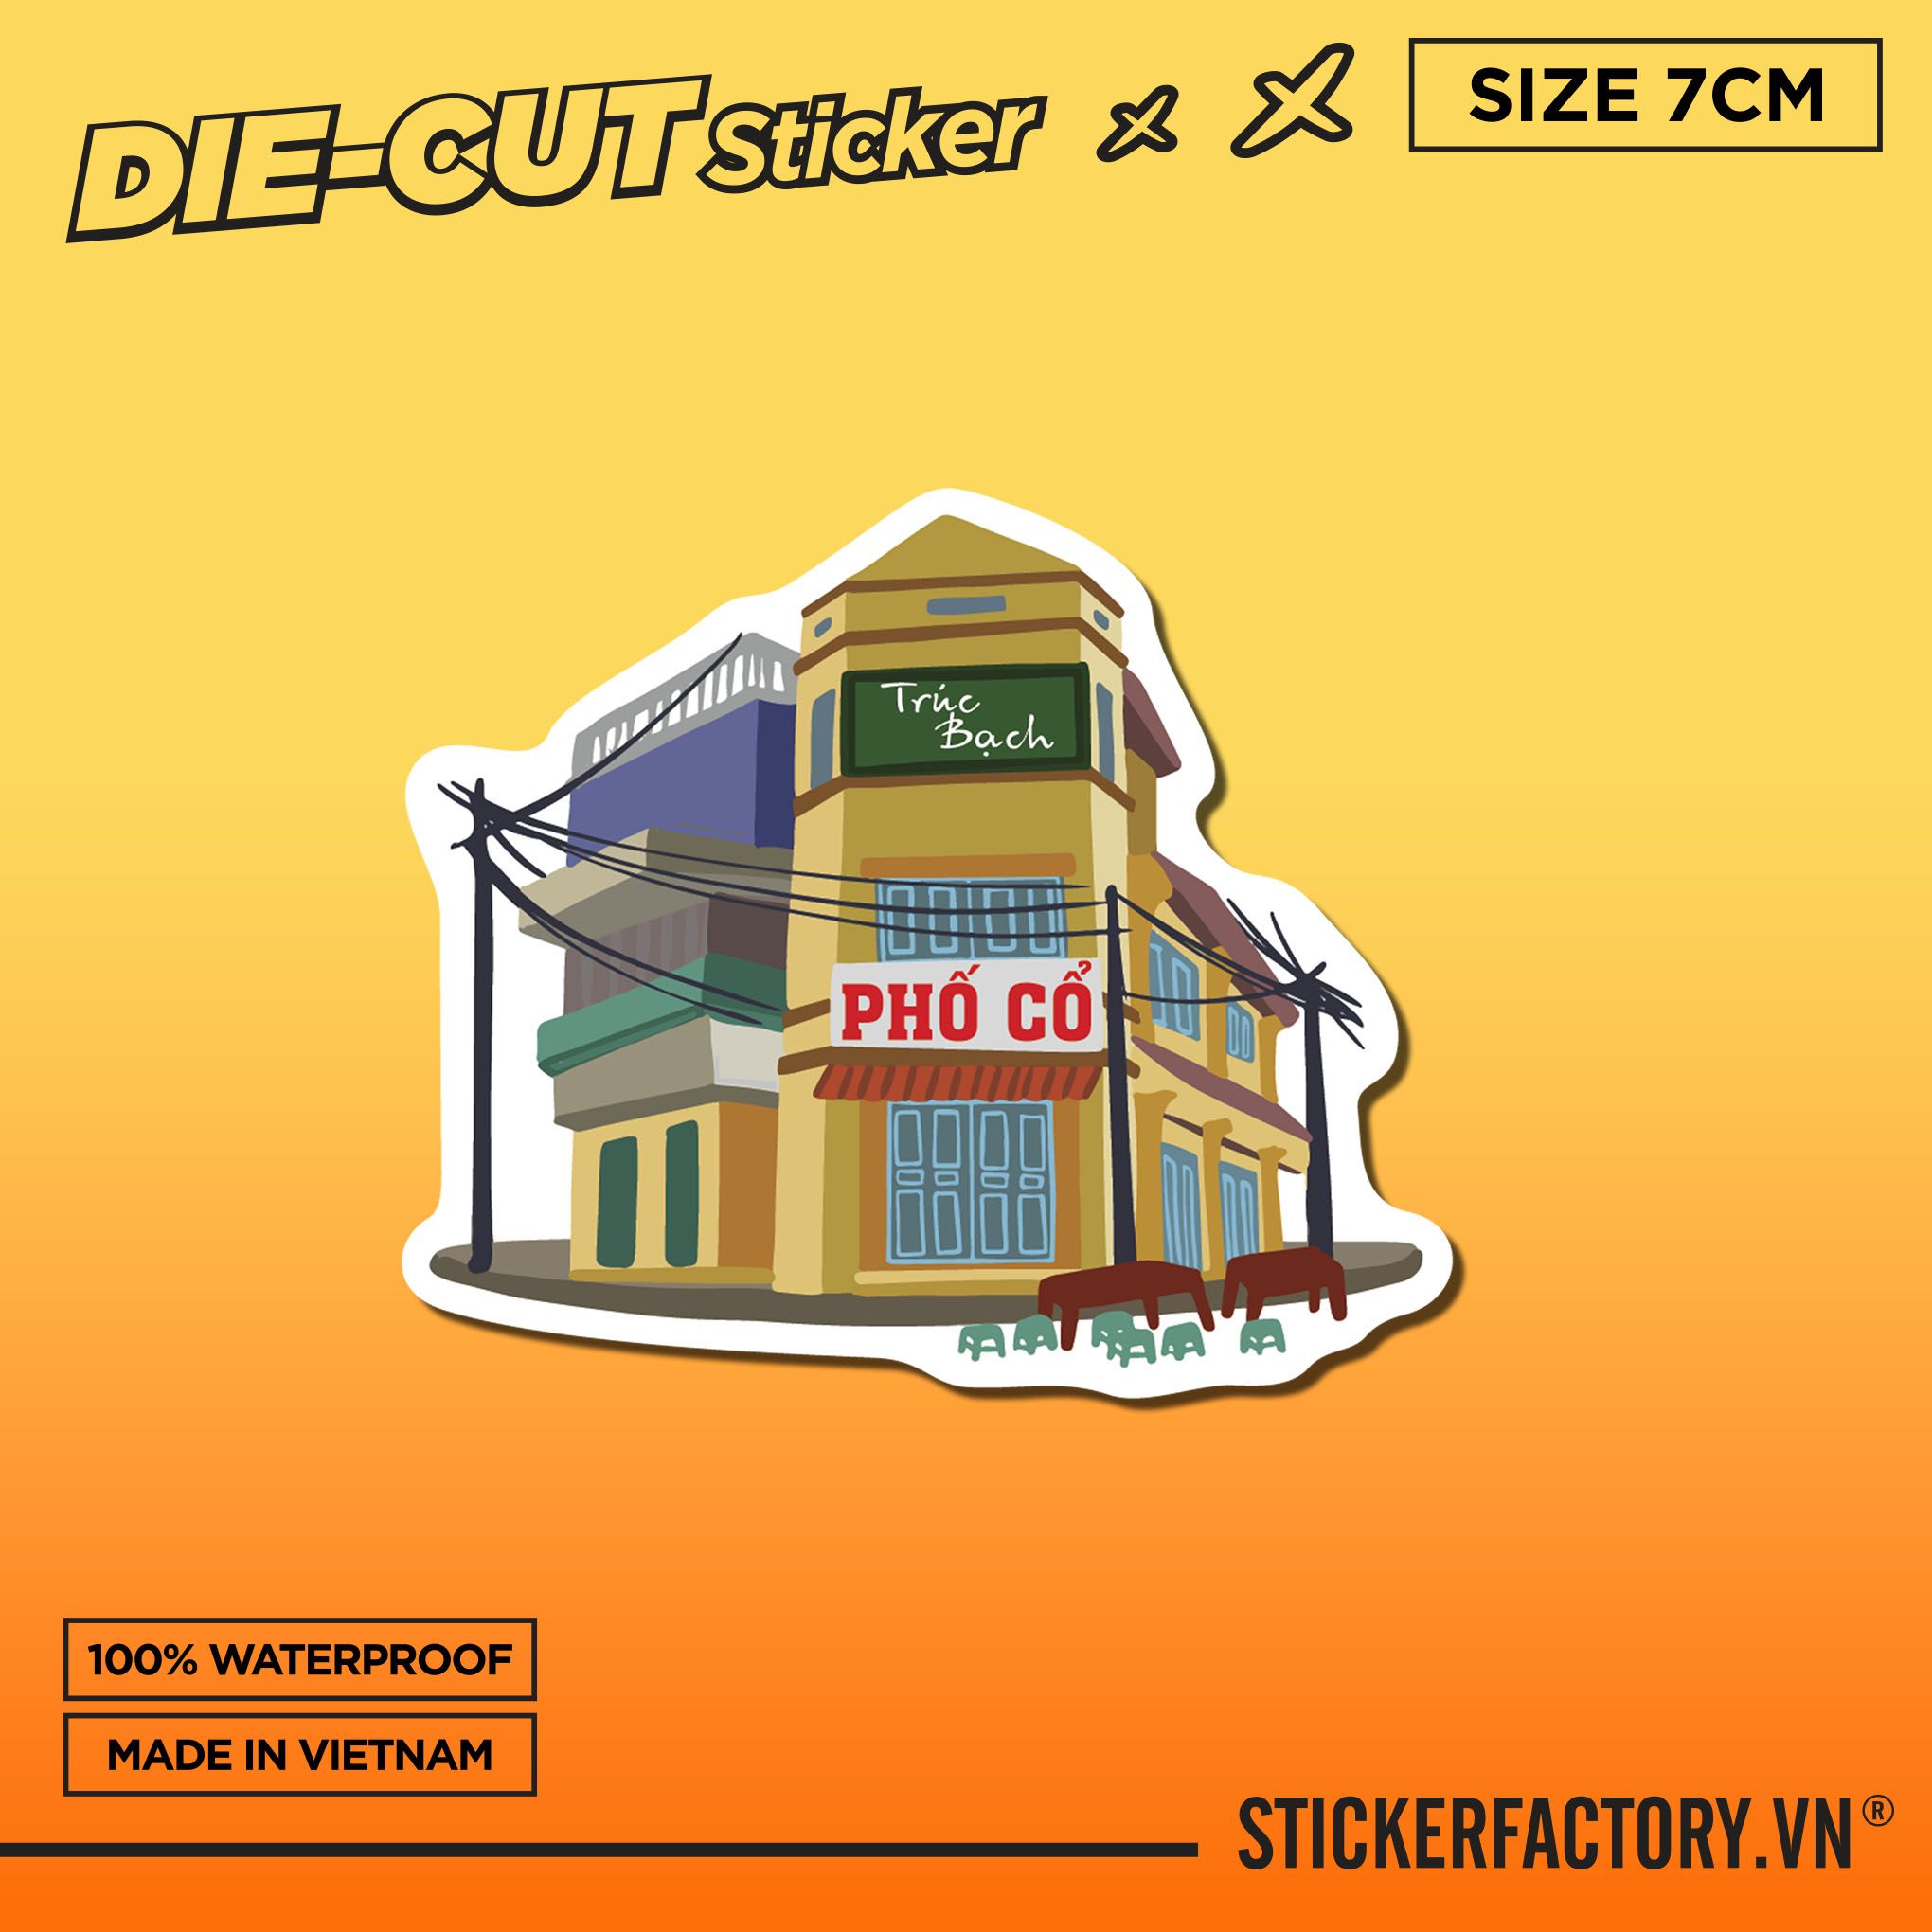 PHỐ CỔ HÀ NỘI - Sticker Die-cut hình dán cắt rời